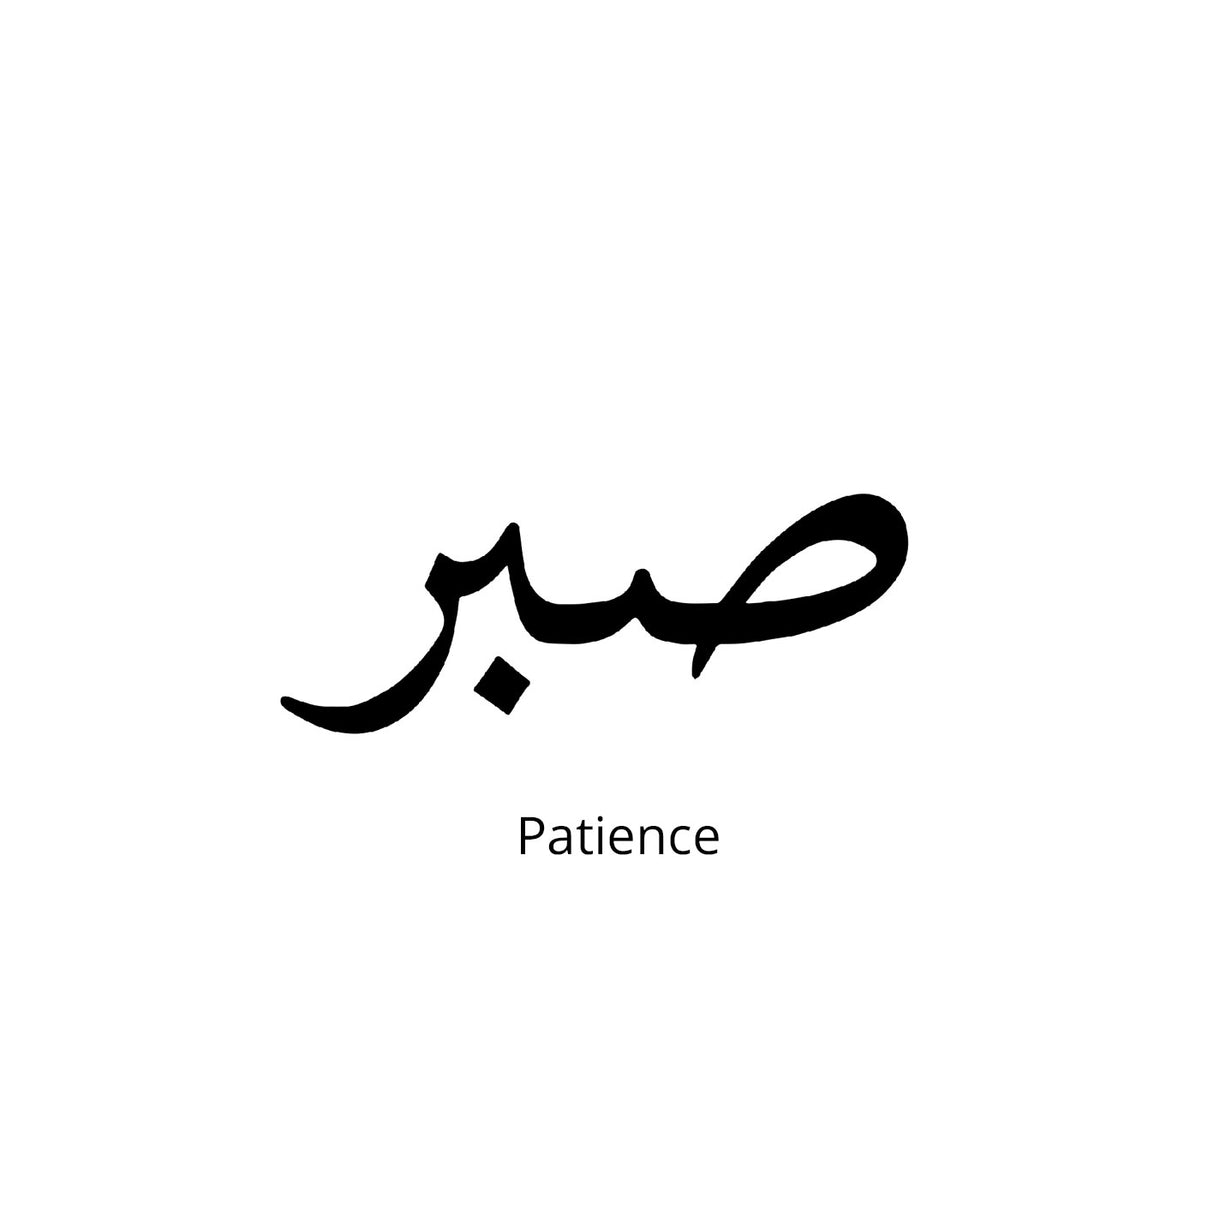 Sabr-Patience-Urdu Semi Permanent Tattoo